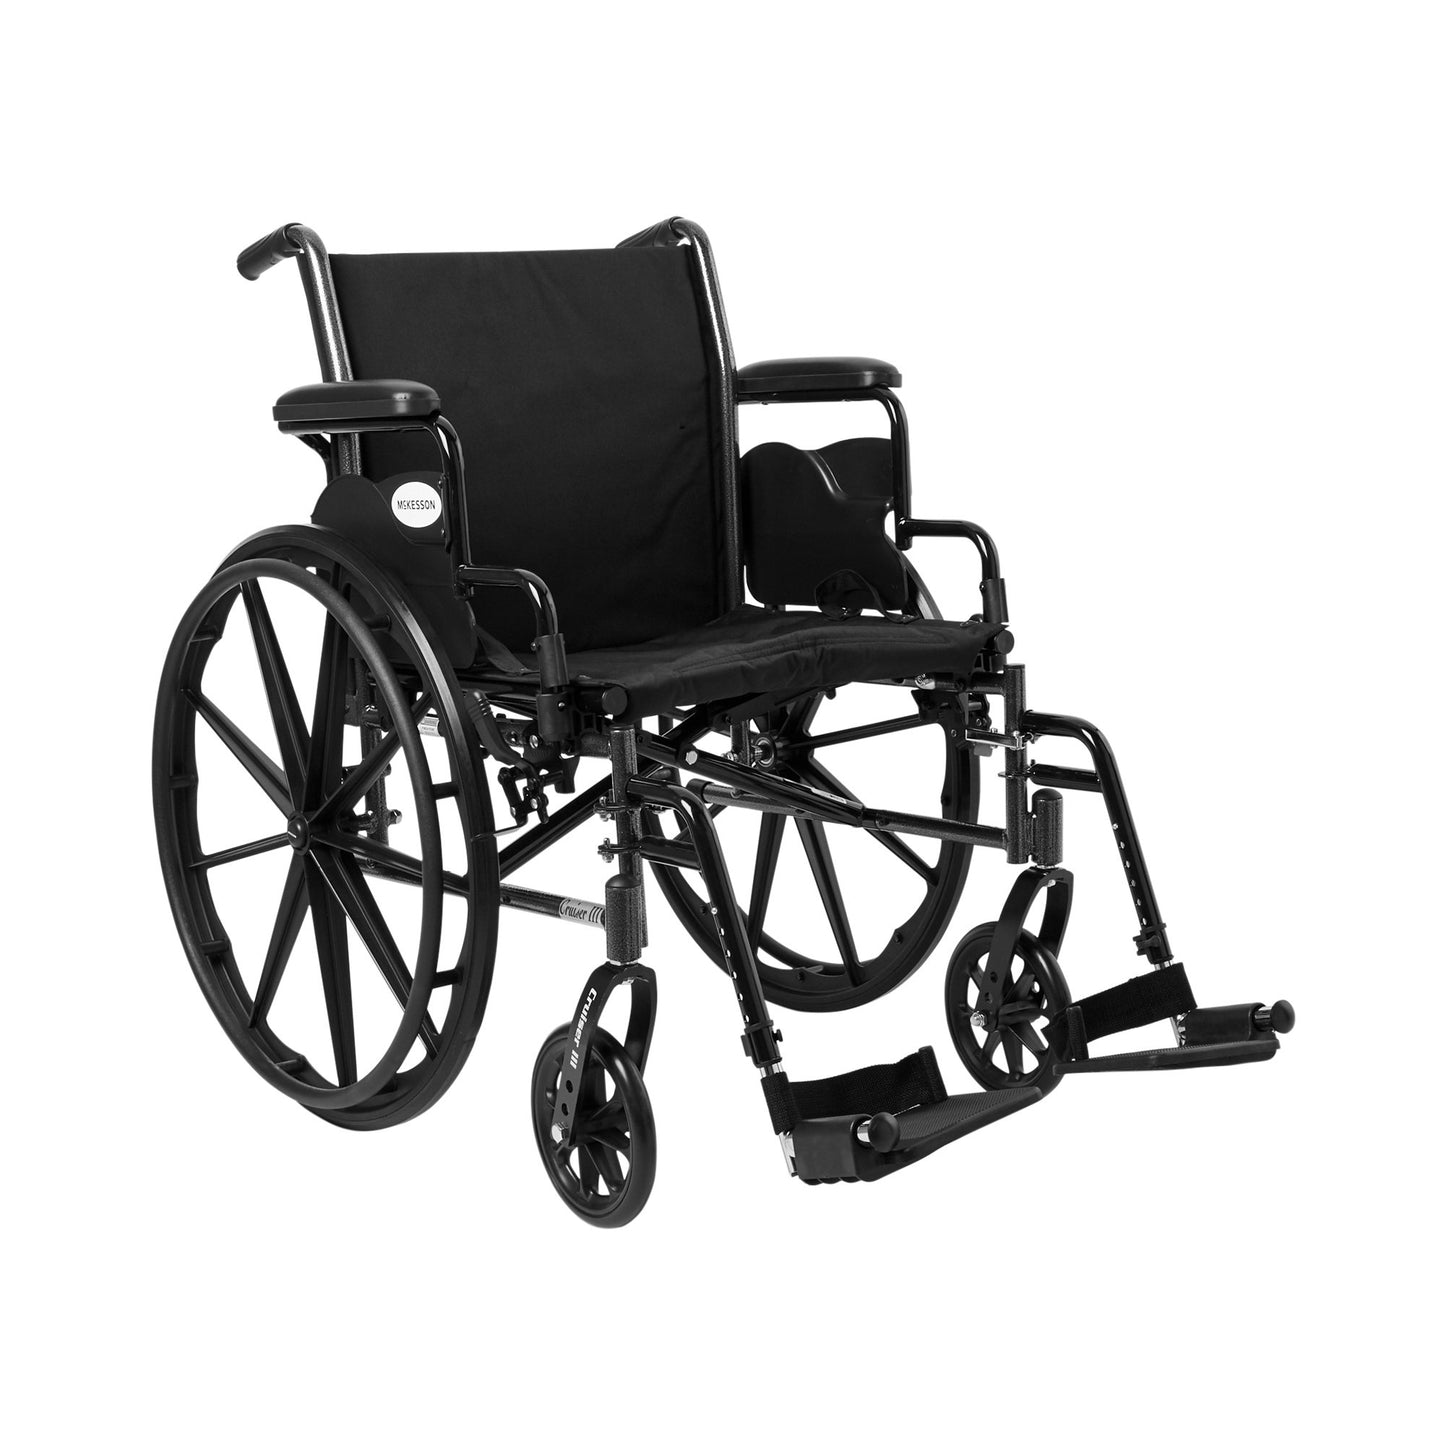 McKesson Lightweight Wheelchair, 20-Inch Seat Width